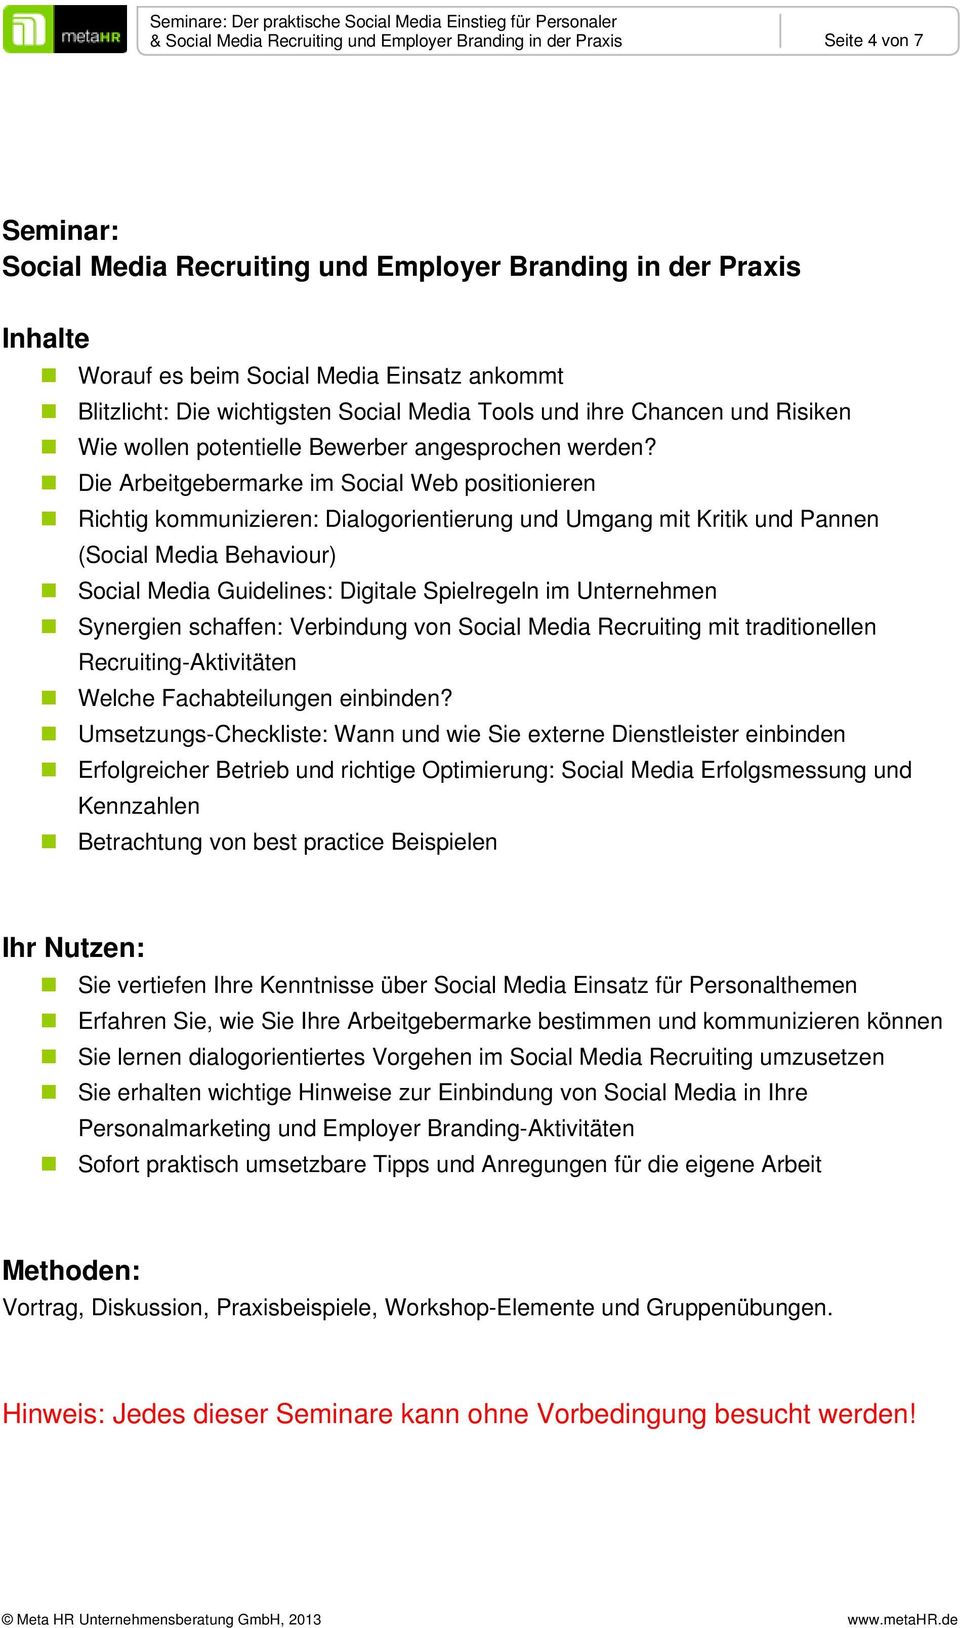 Die Arbeitgebermarke im Social Web positionieren Richtig kommunizieren: Dialogorientierung und Umgang mit Kritik und Pannen (Social Media Behaviour) Social Media Guidelines: Digitale Spielregeln im